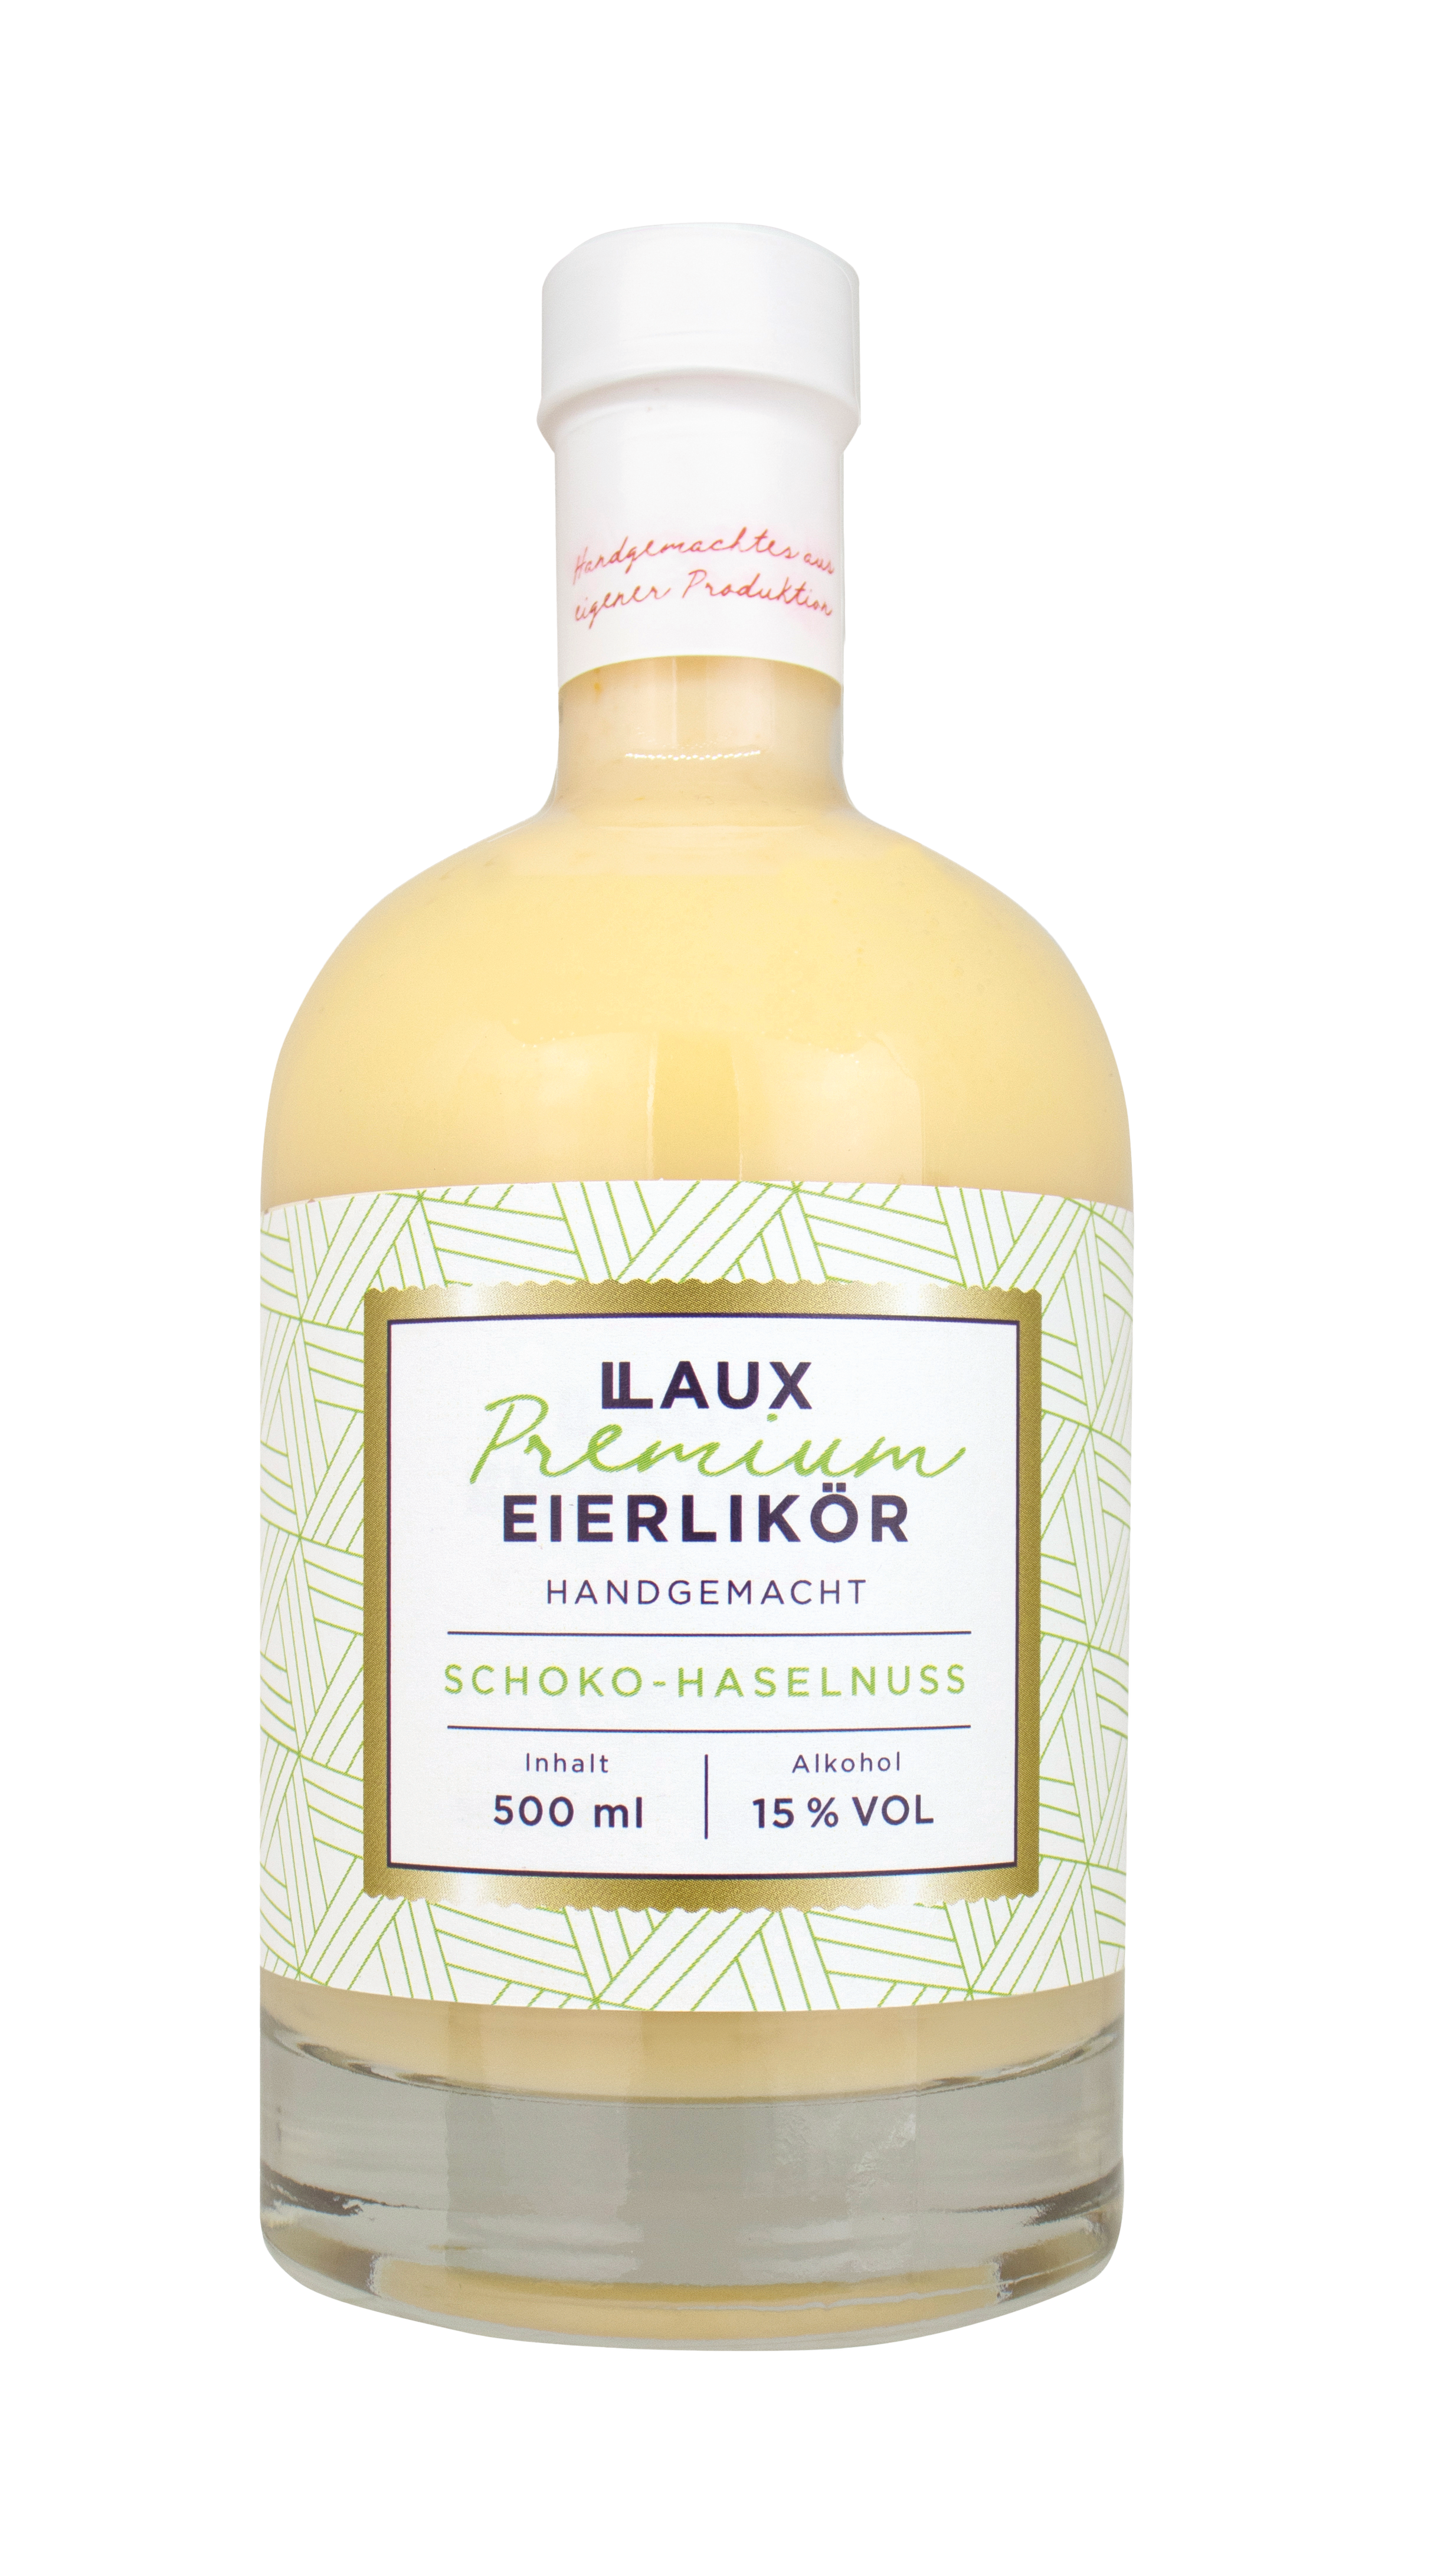 Premium Eierlikör Schoko Haselnuss - 500ml Flasche